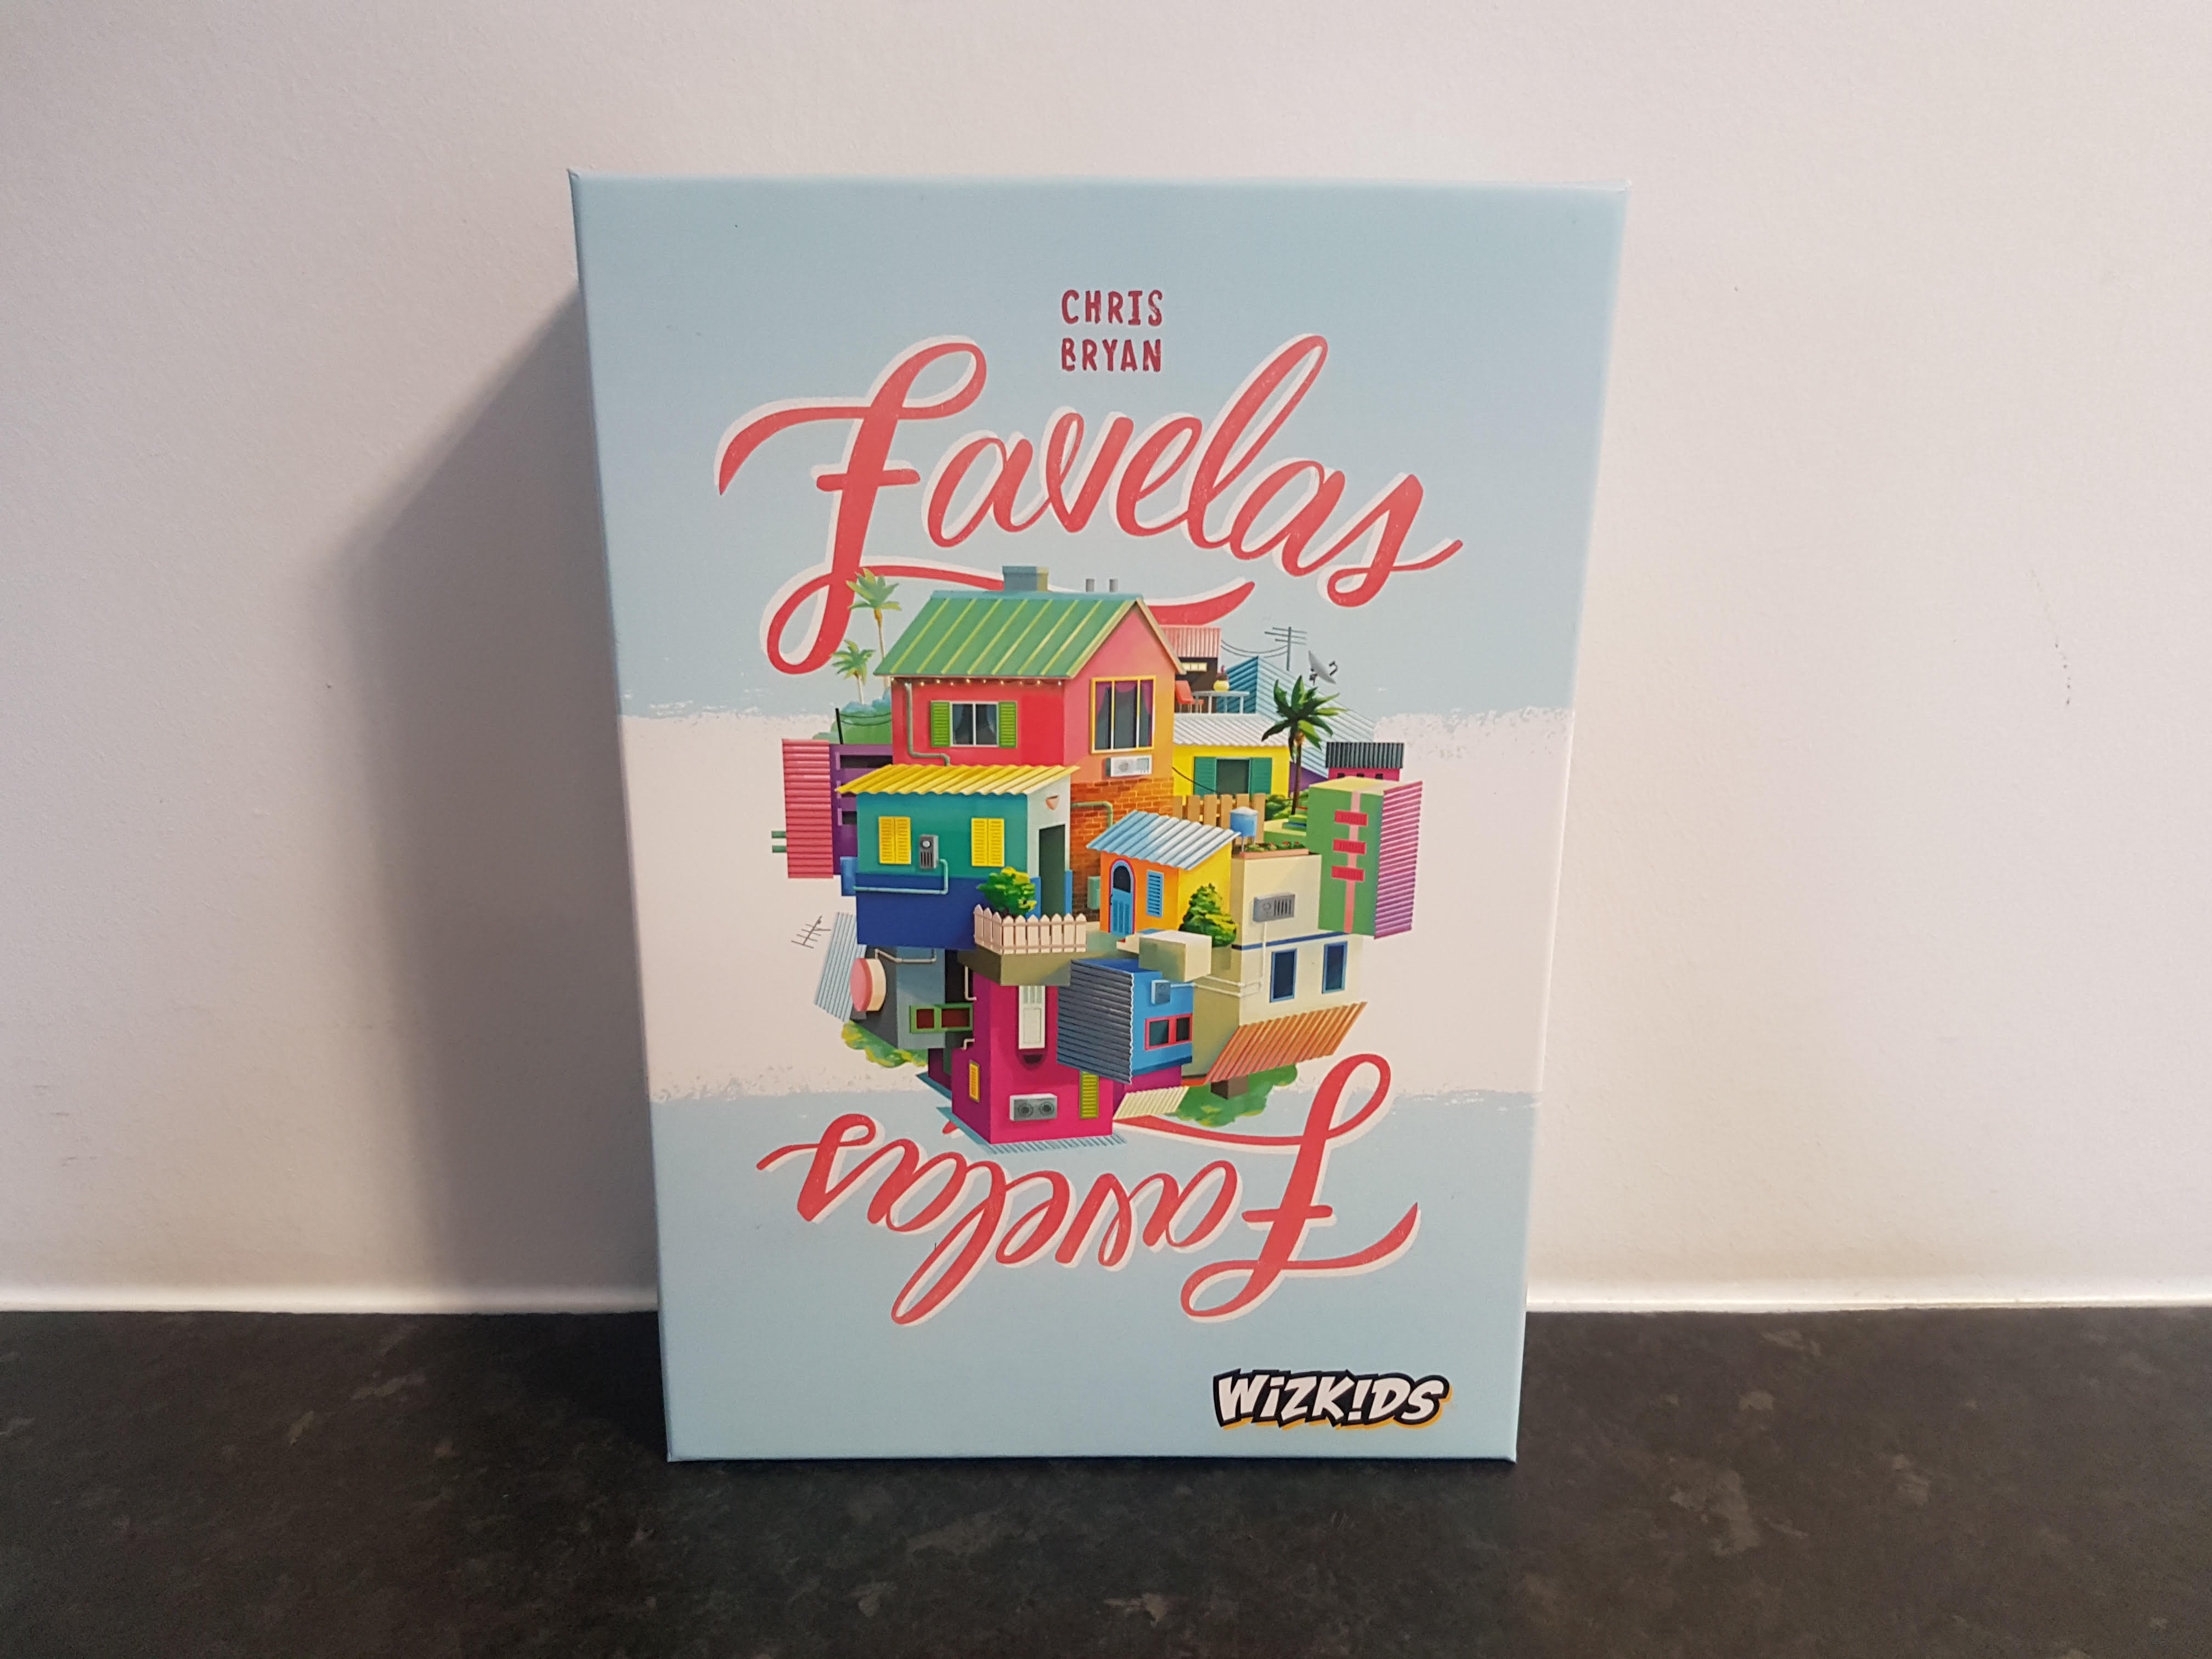 Favelas Review – A Vivid Puzzle